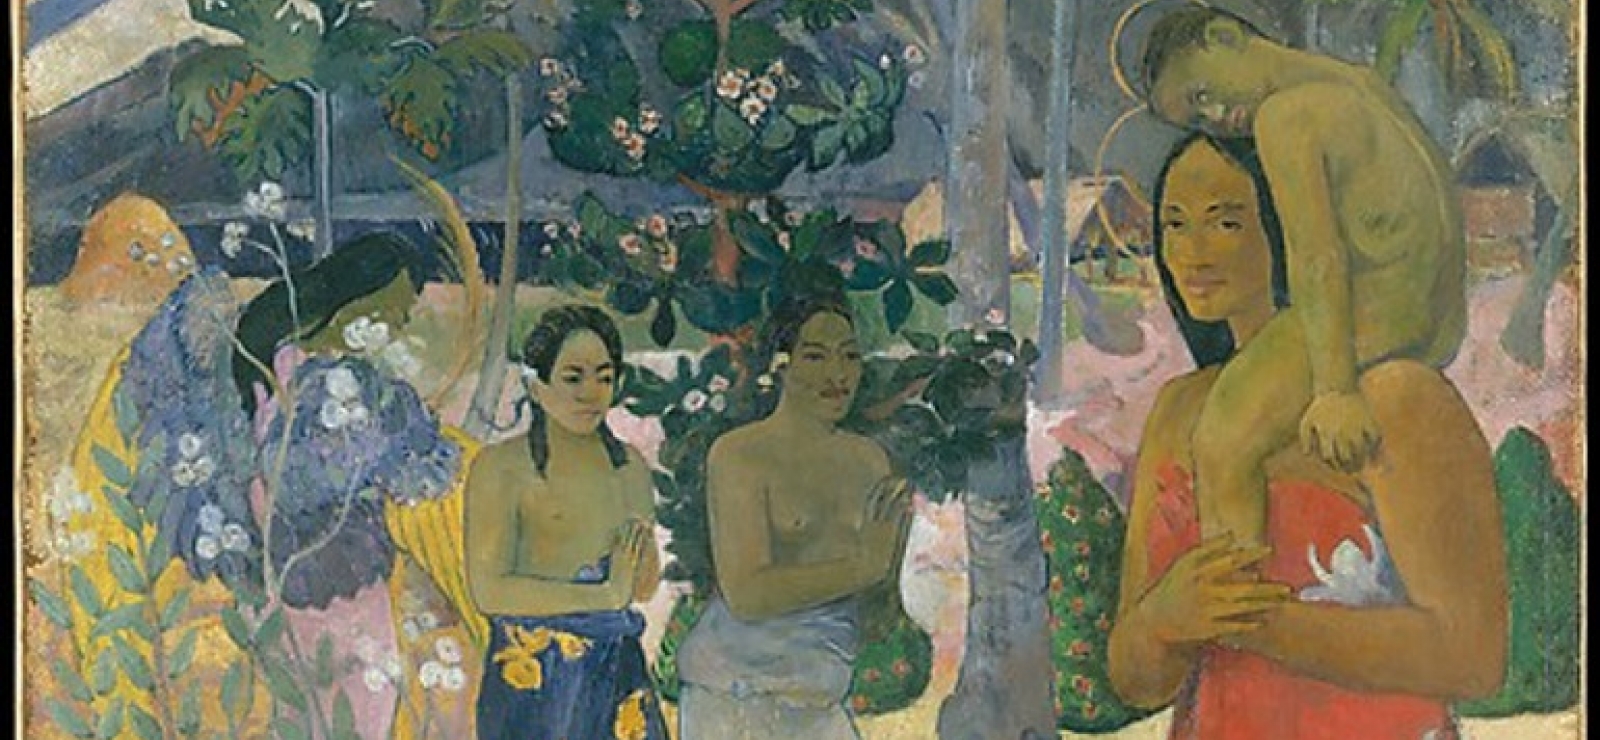 Paul Gauguin-Ia Orana Maria-carnet de voyage